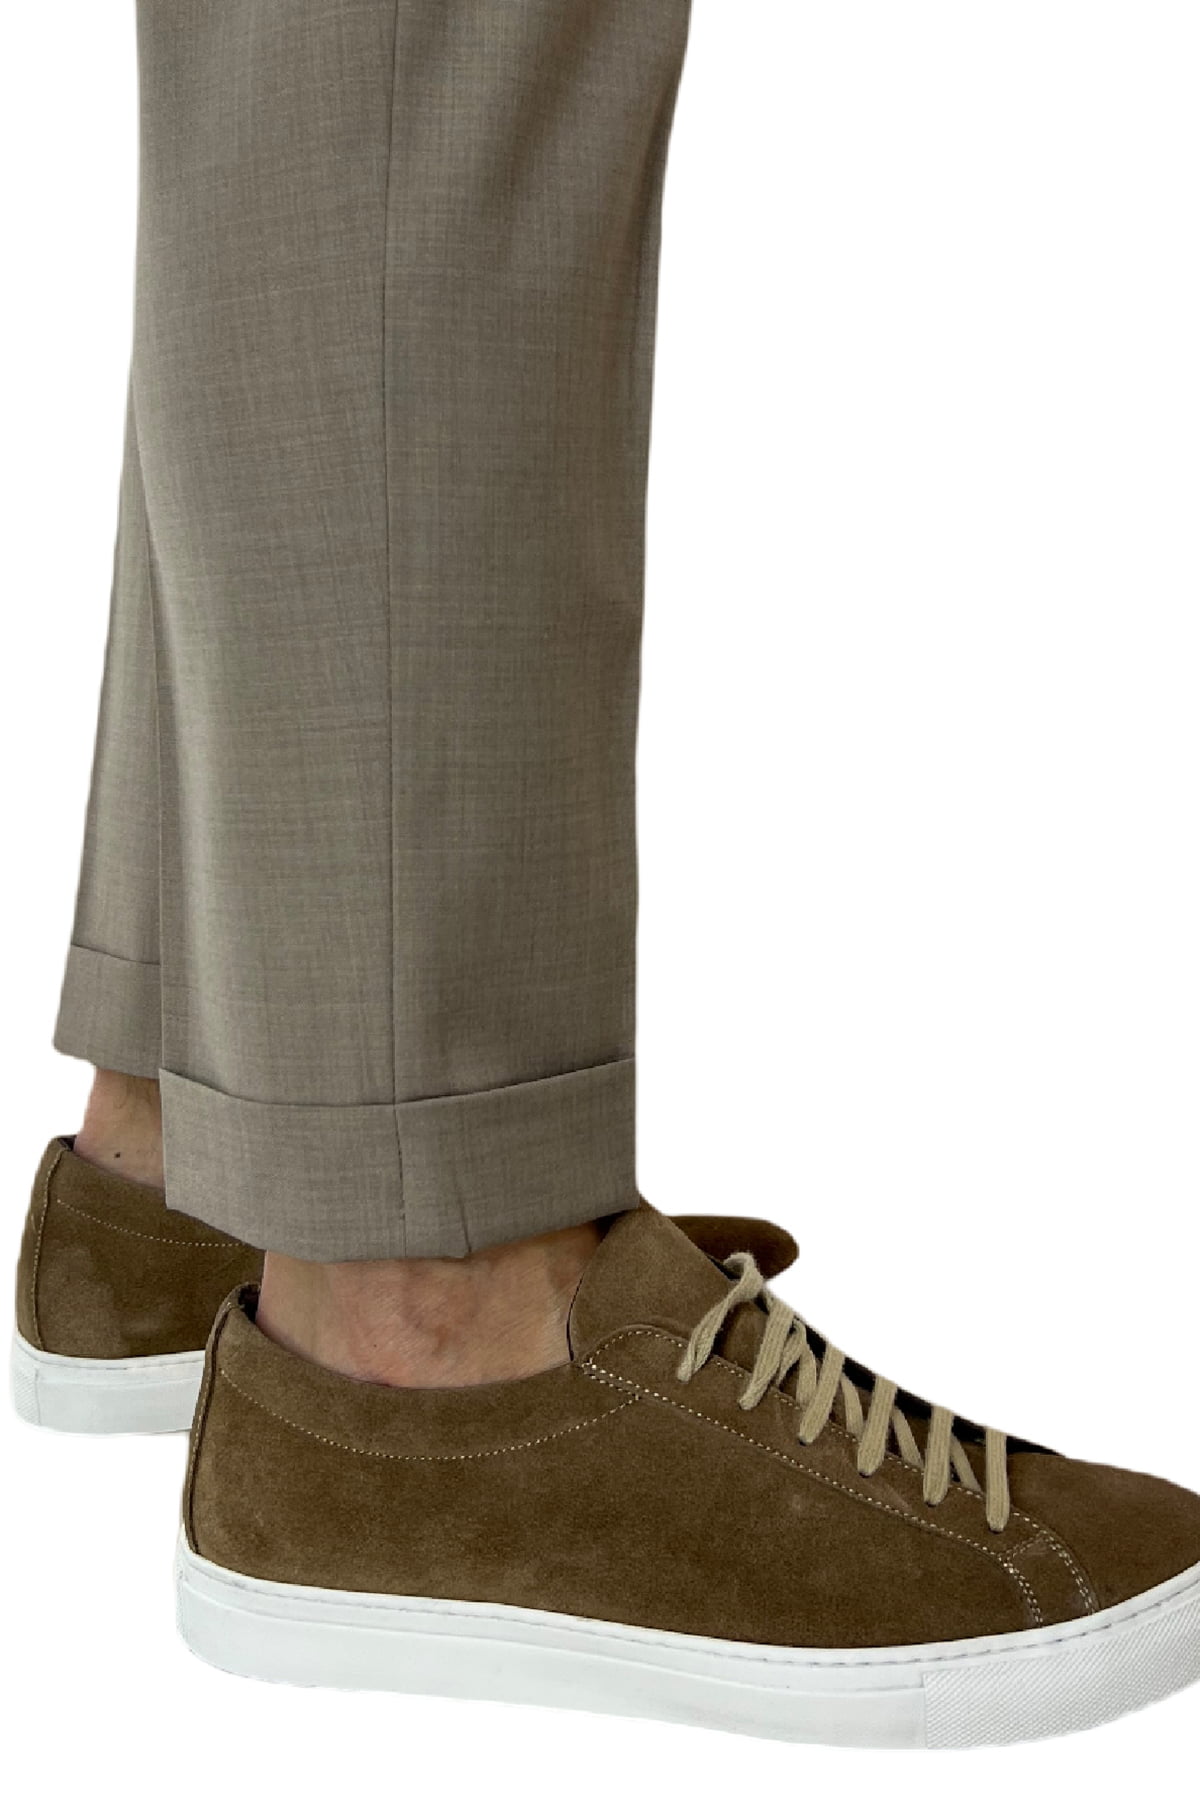 Pantalaccio uomo Fango in fresco lana tasca america con doppia pence e laccio in vita risvolto 4cm